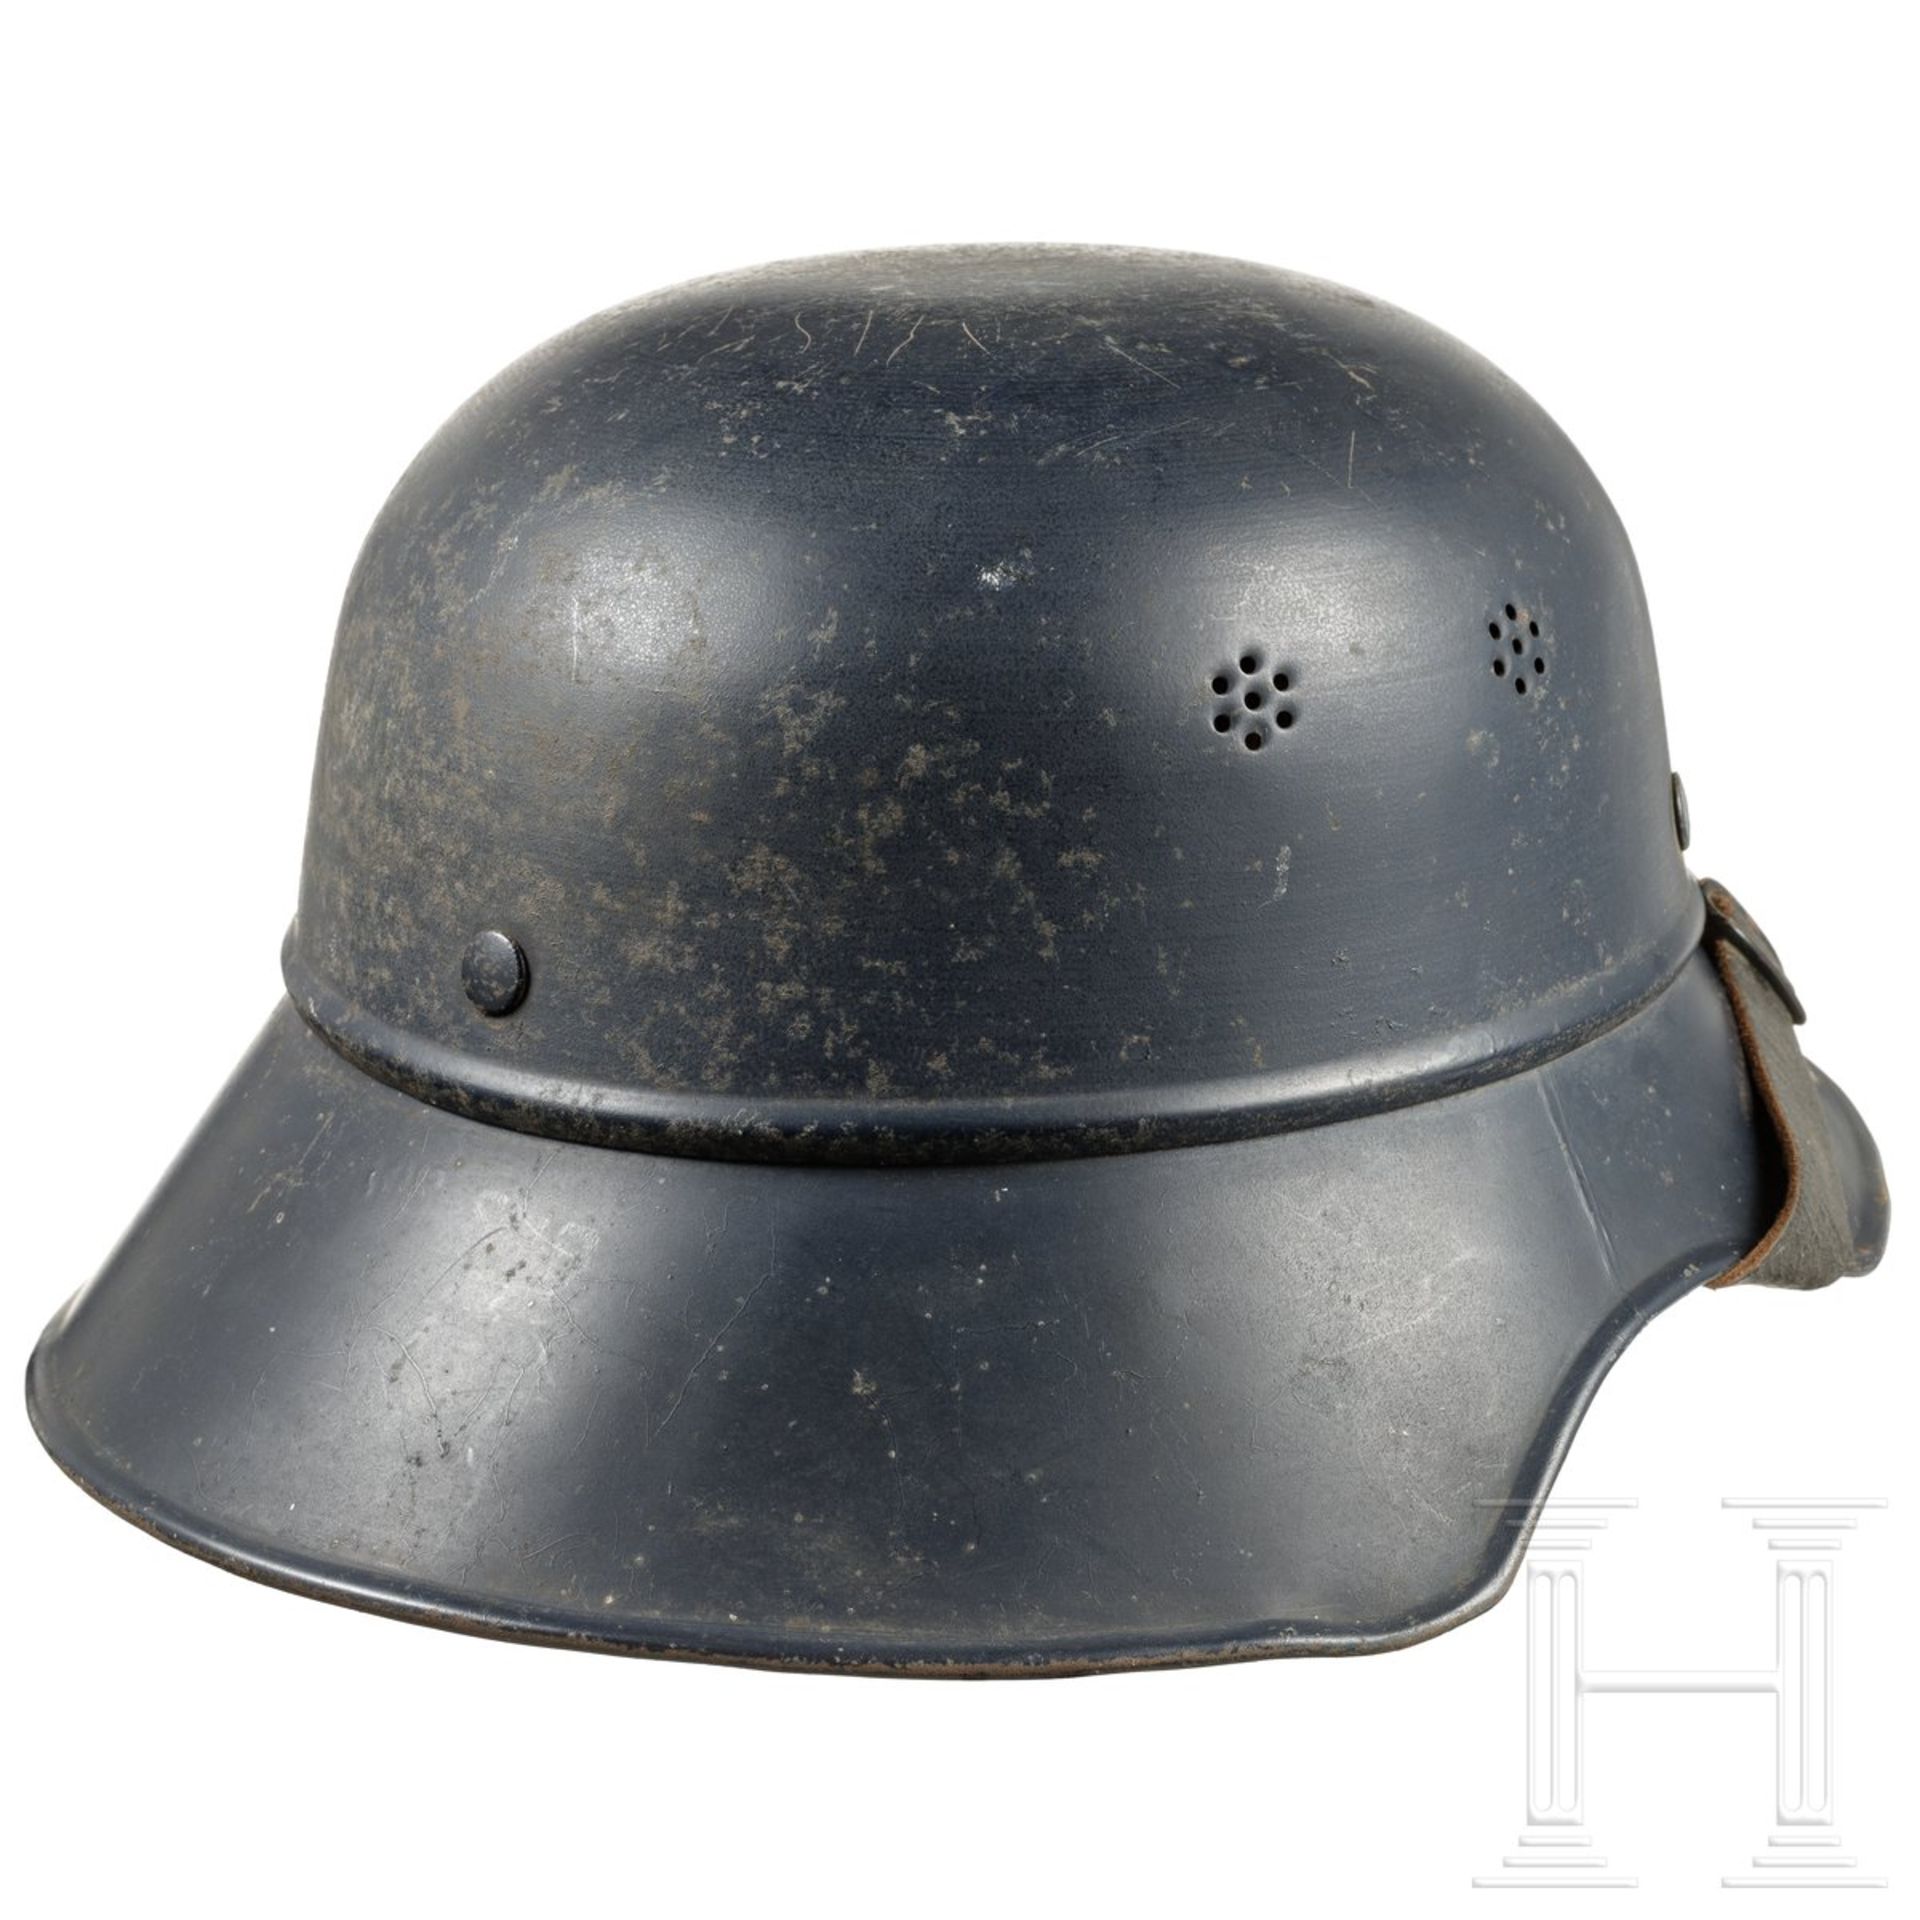 Deutscher Stahlhelm "Gladiator" für Luftschutz, um 1940 - Image 4 of 6